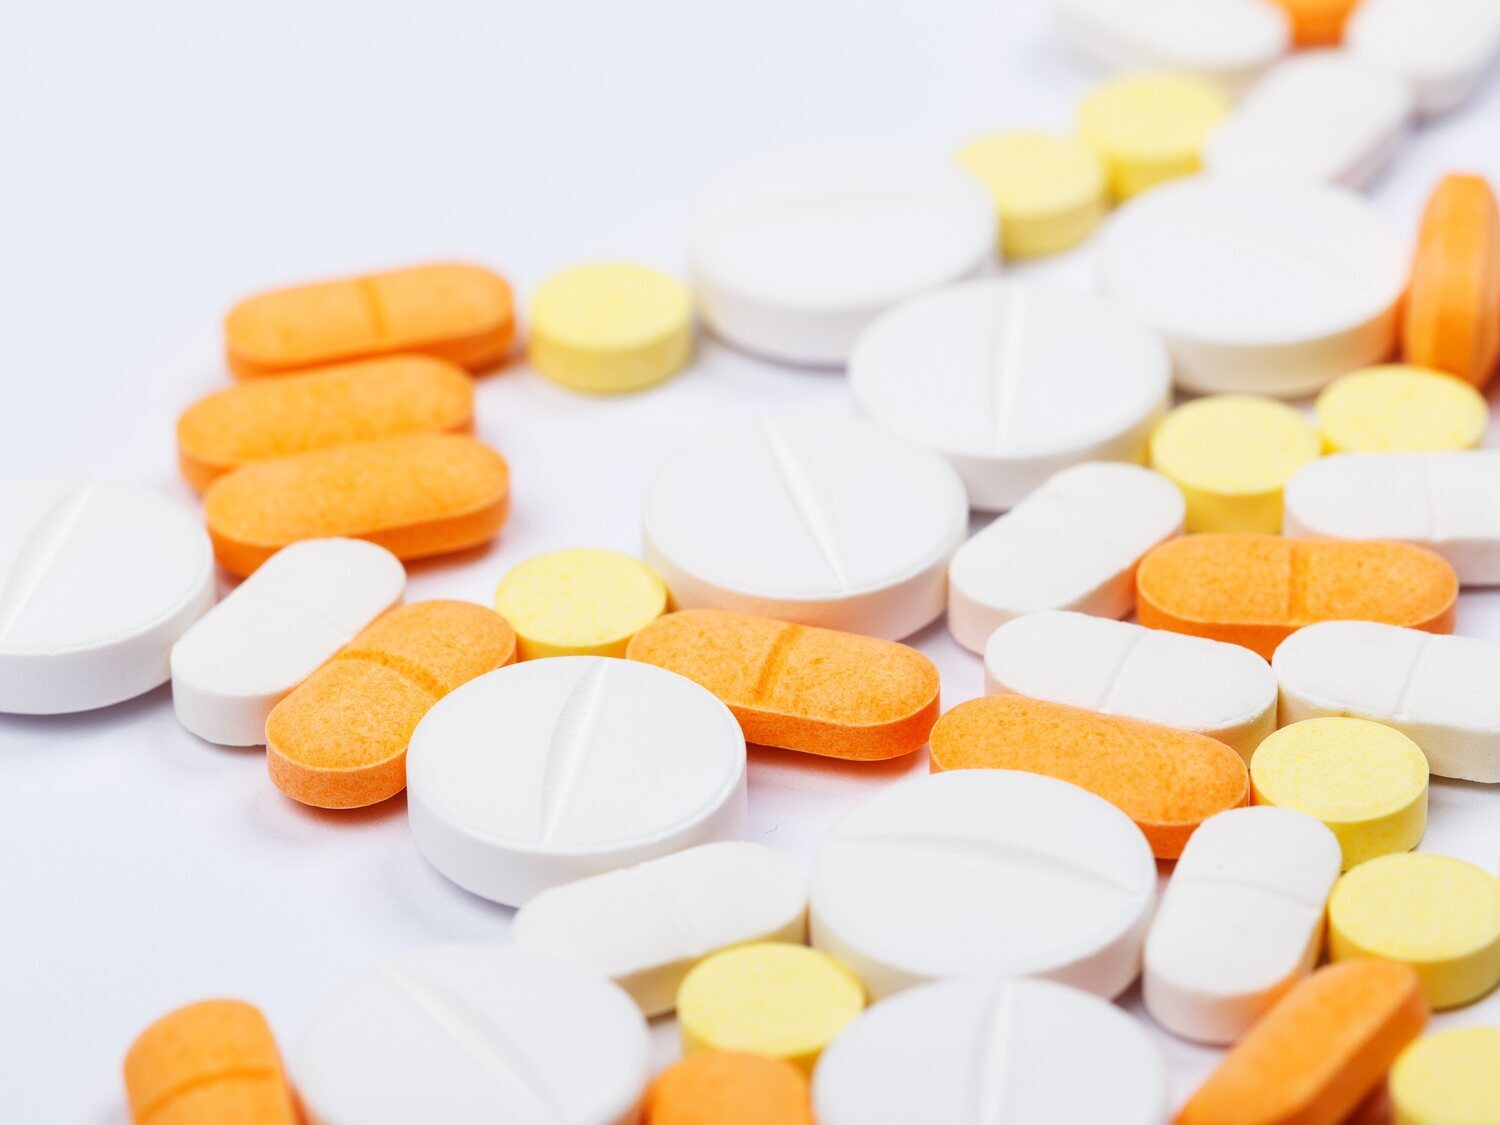 Sanidad alerta de una "interacción potencialmente mortal" por mezclar estos populares medicamentos